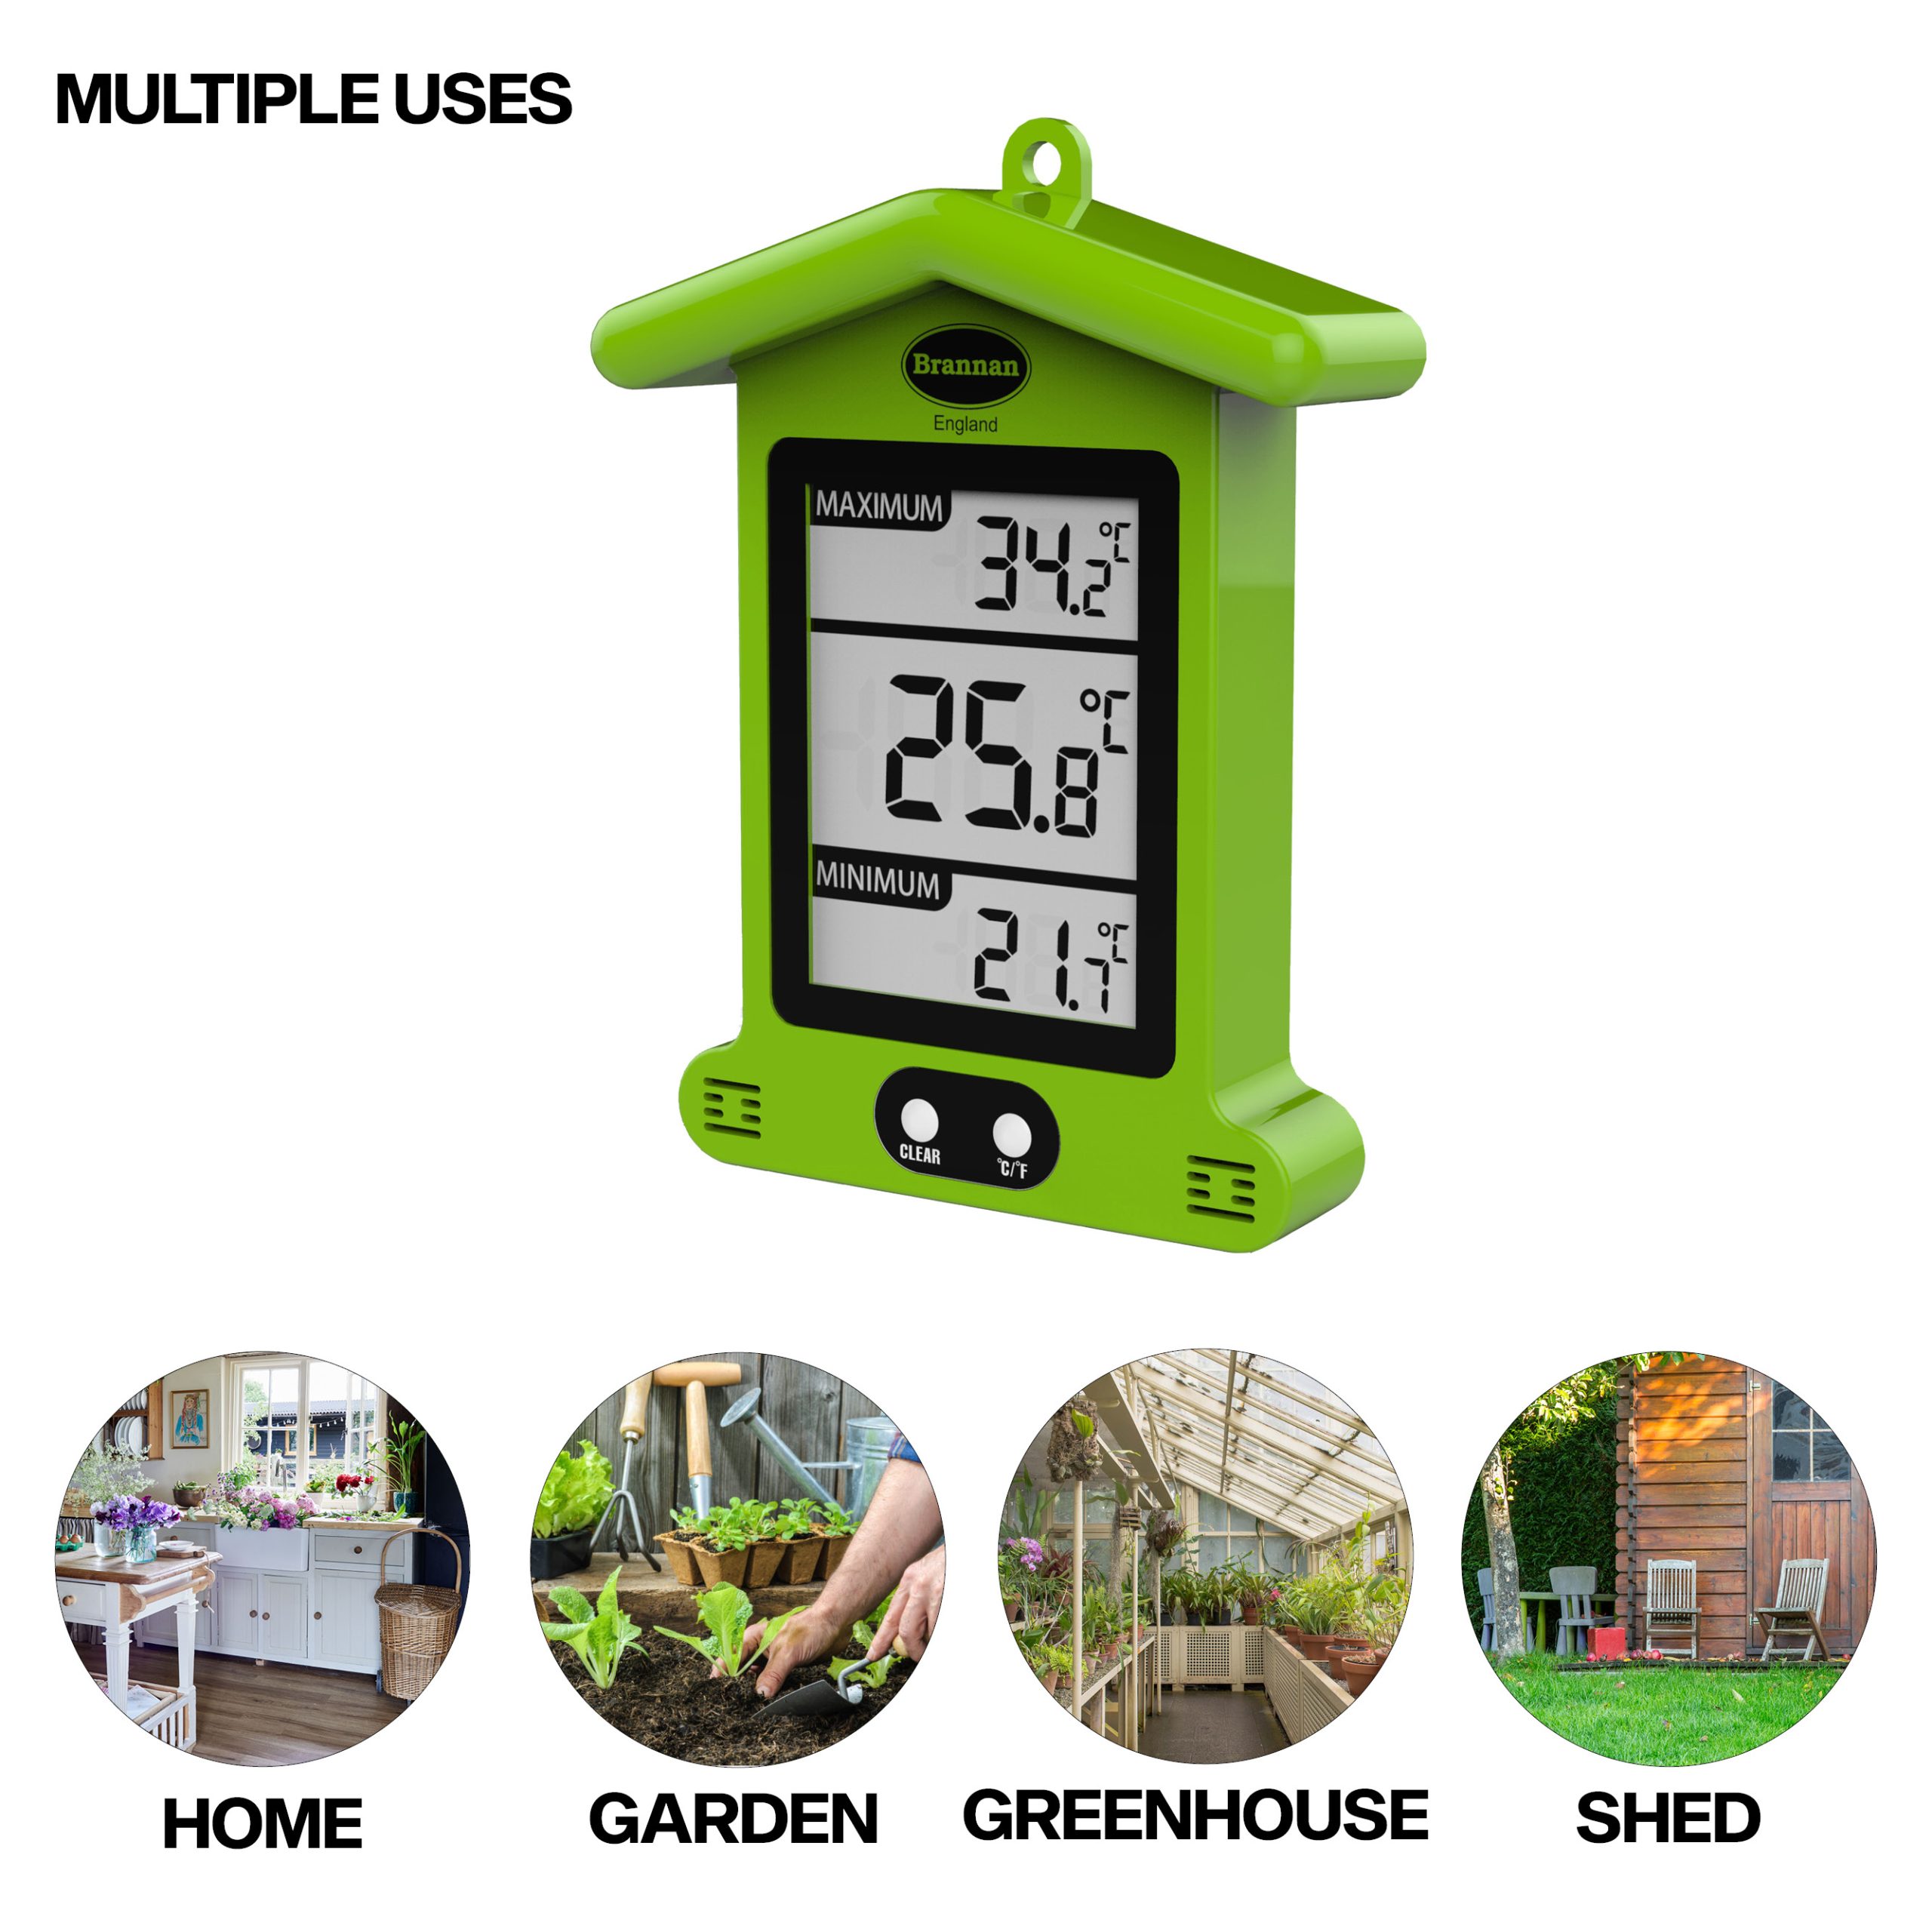 Brannan Waterproof Max Min Greenhouse Thermometer - Maximum Minimum  Recording Thermometer Greenhouse Garden Outdoor Indoor